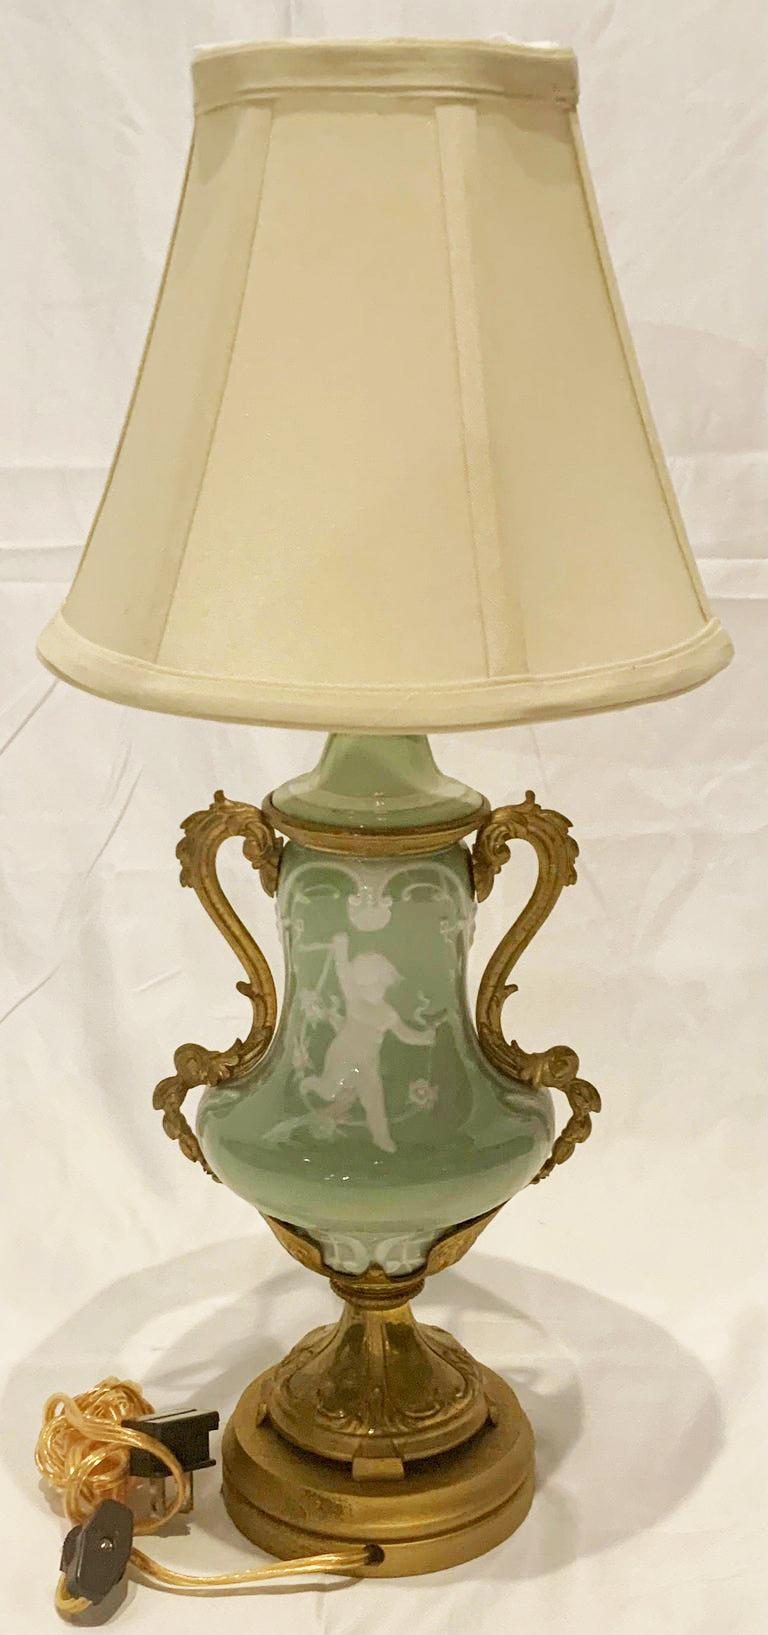 Petite antique French celadon porcelain lamp with bronze d' ore mounts, Circa 1880's.